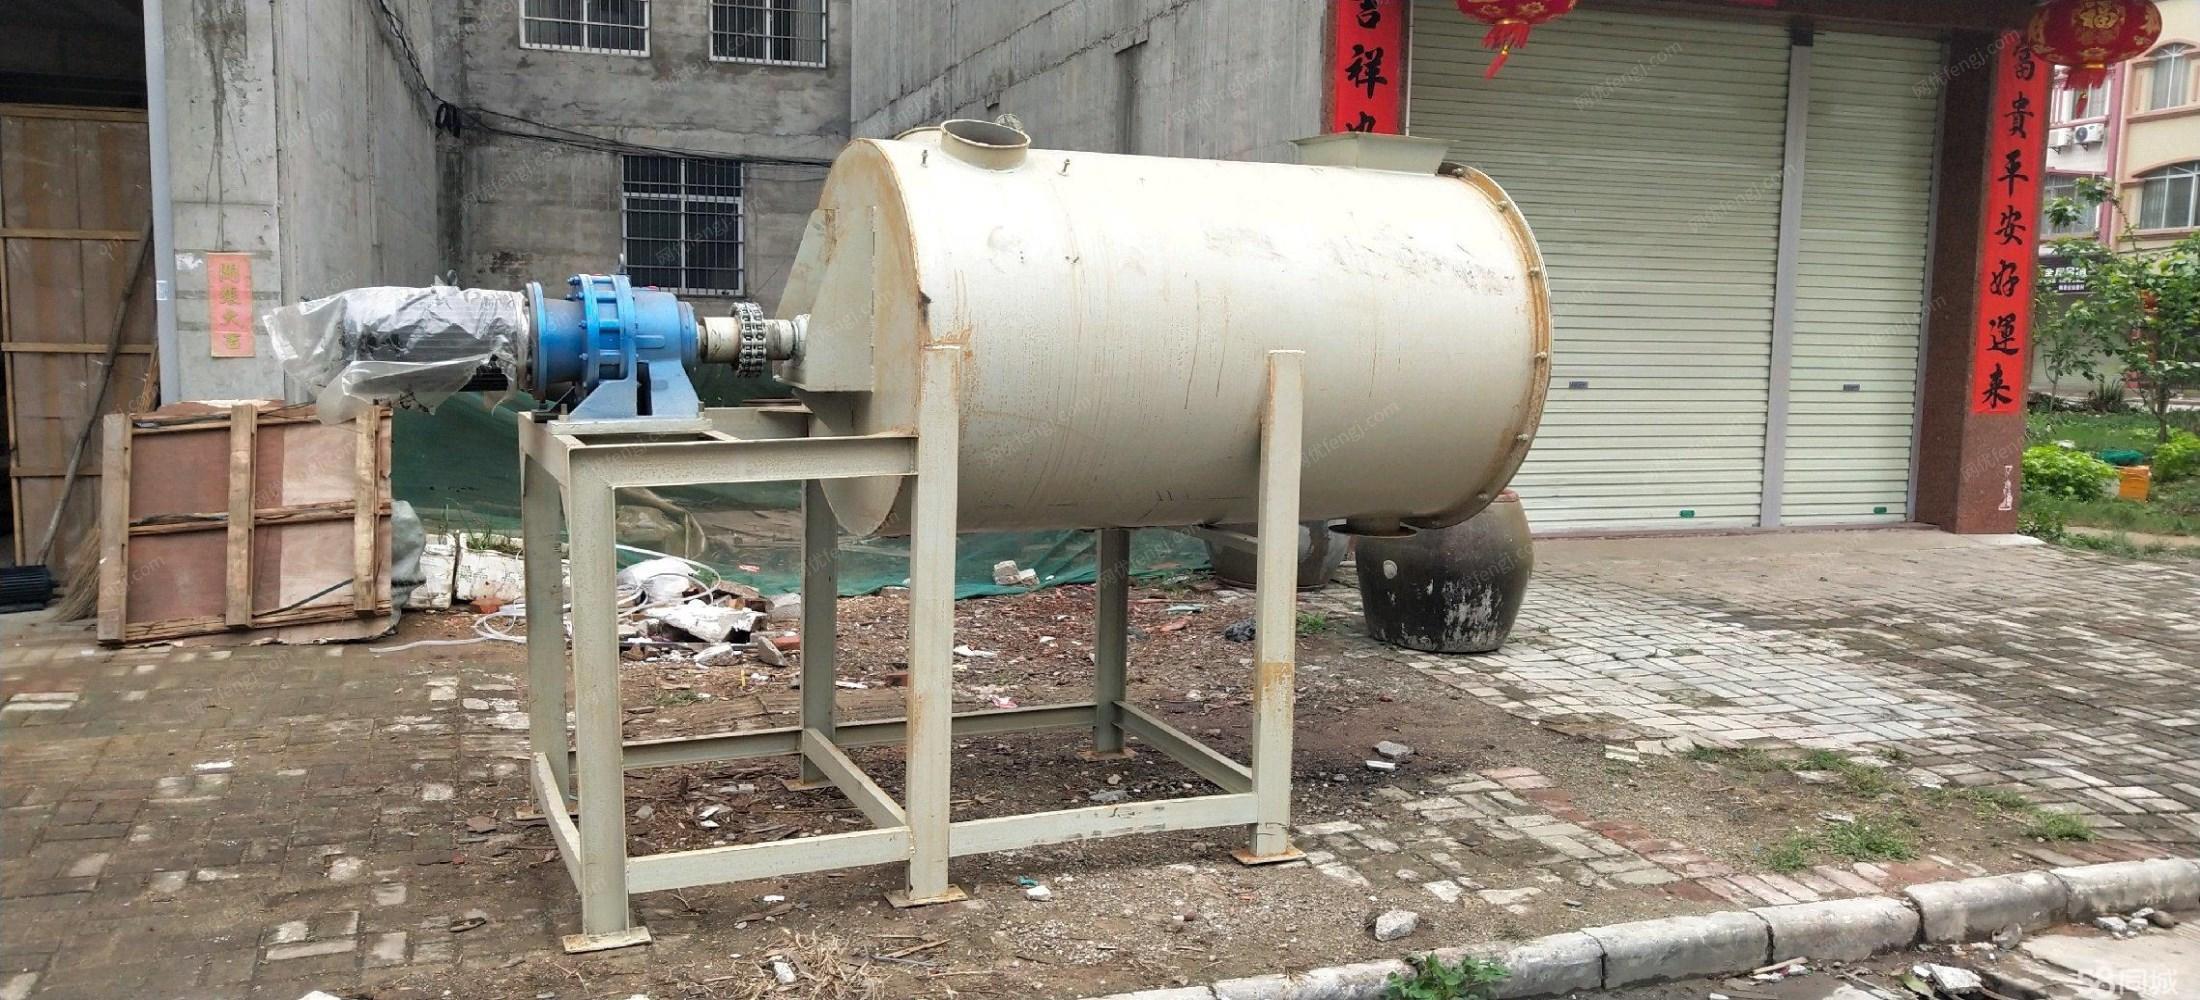 广西南宁出售干混砂浆生产线一套 12000元